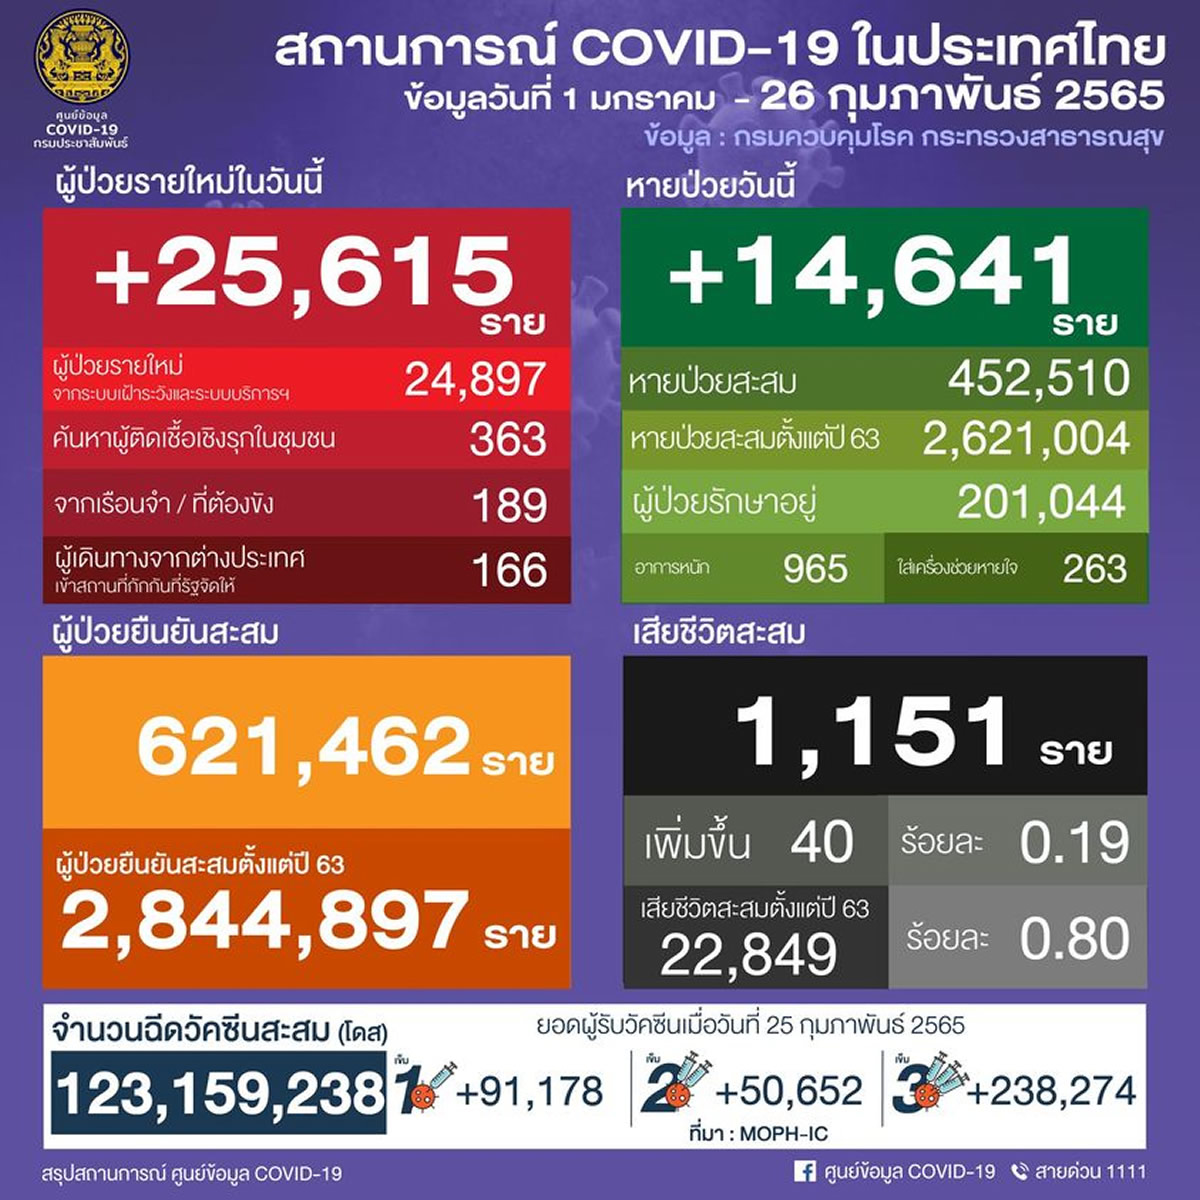 タイ 25,615人陽性 40人死亡／バンコク 3,234人陽性／チョンブリ 1,310人陽性／ノンタブリ 1,129人陽性［2022年2月26日発表］